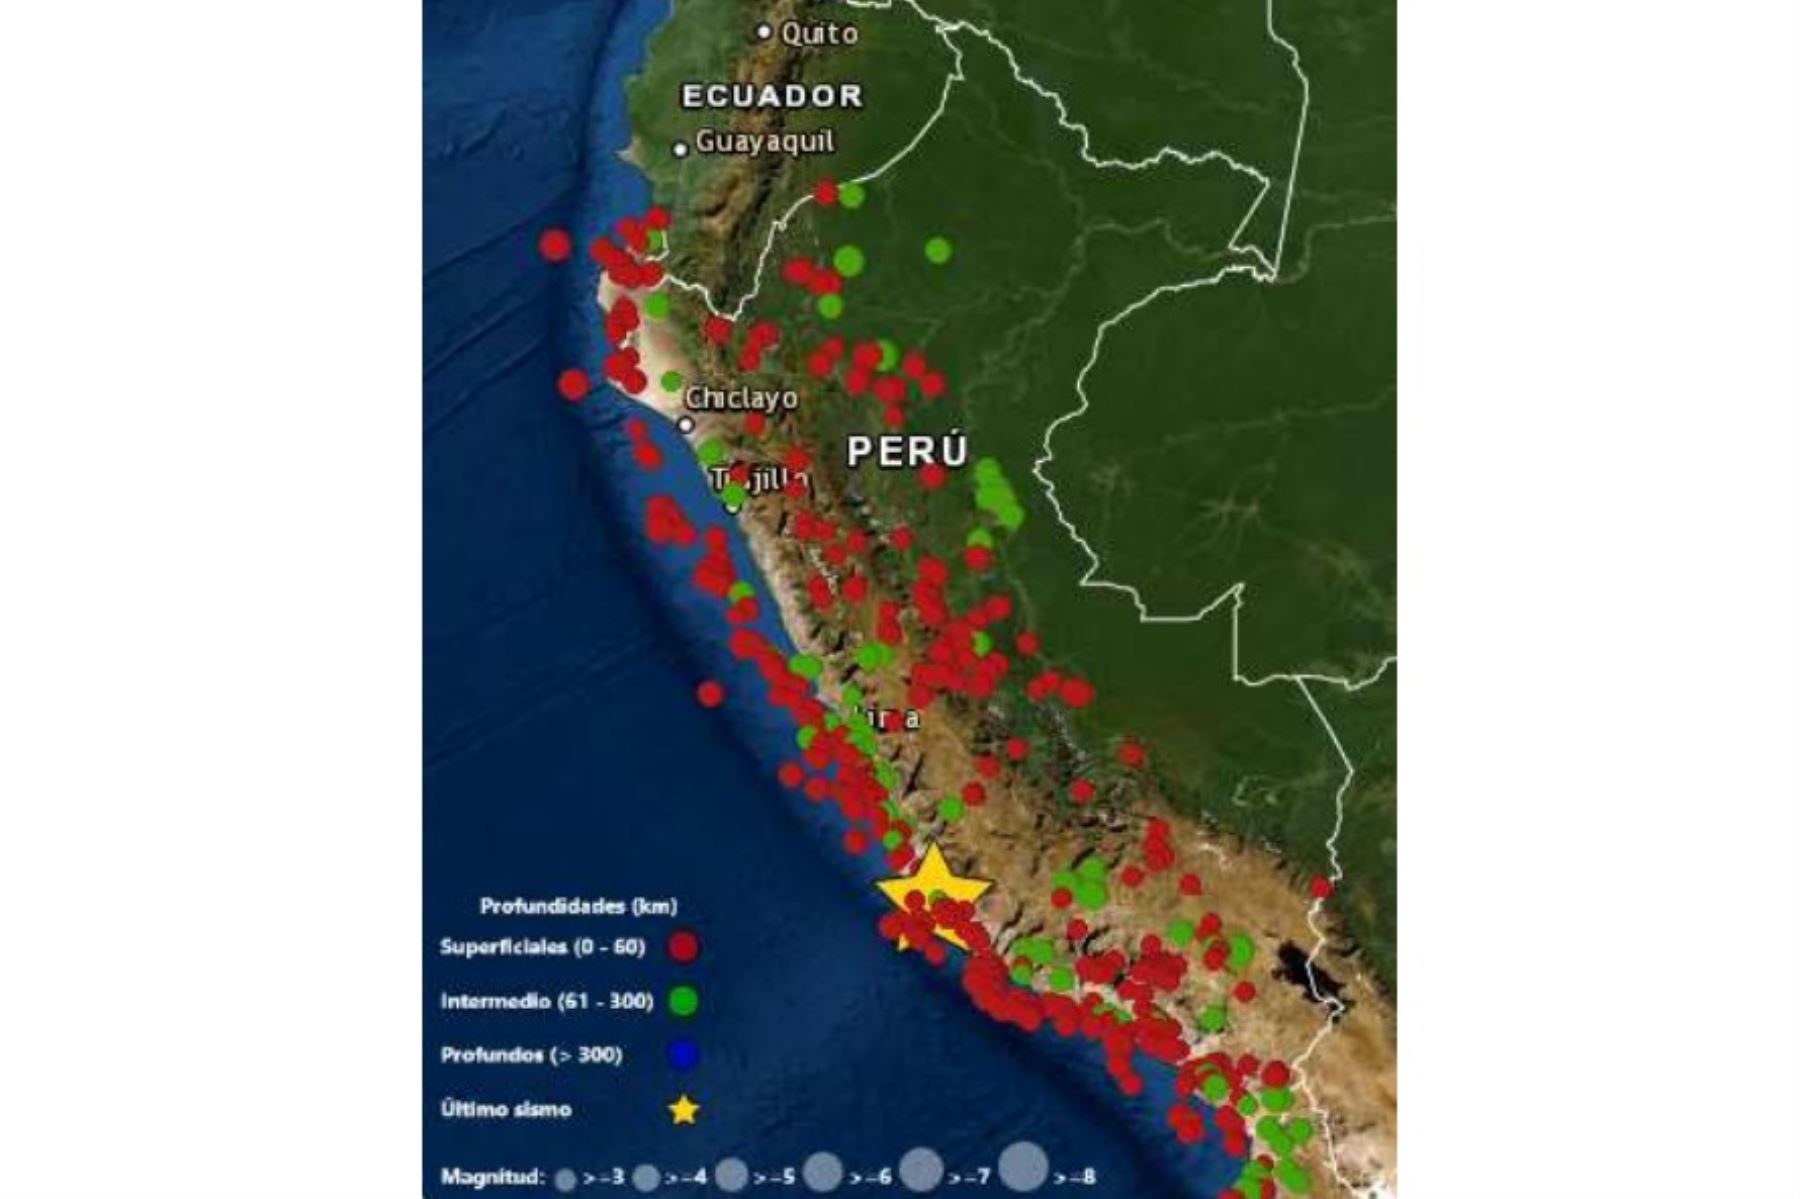 En lo que va del año, el IGP ha reportado 447 sismos, gracias a modernos equipos de registro. Foto:ANDINA/Difusión